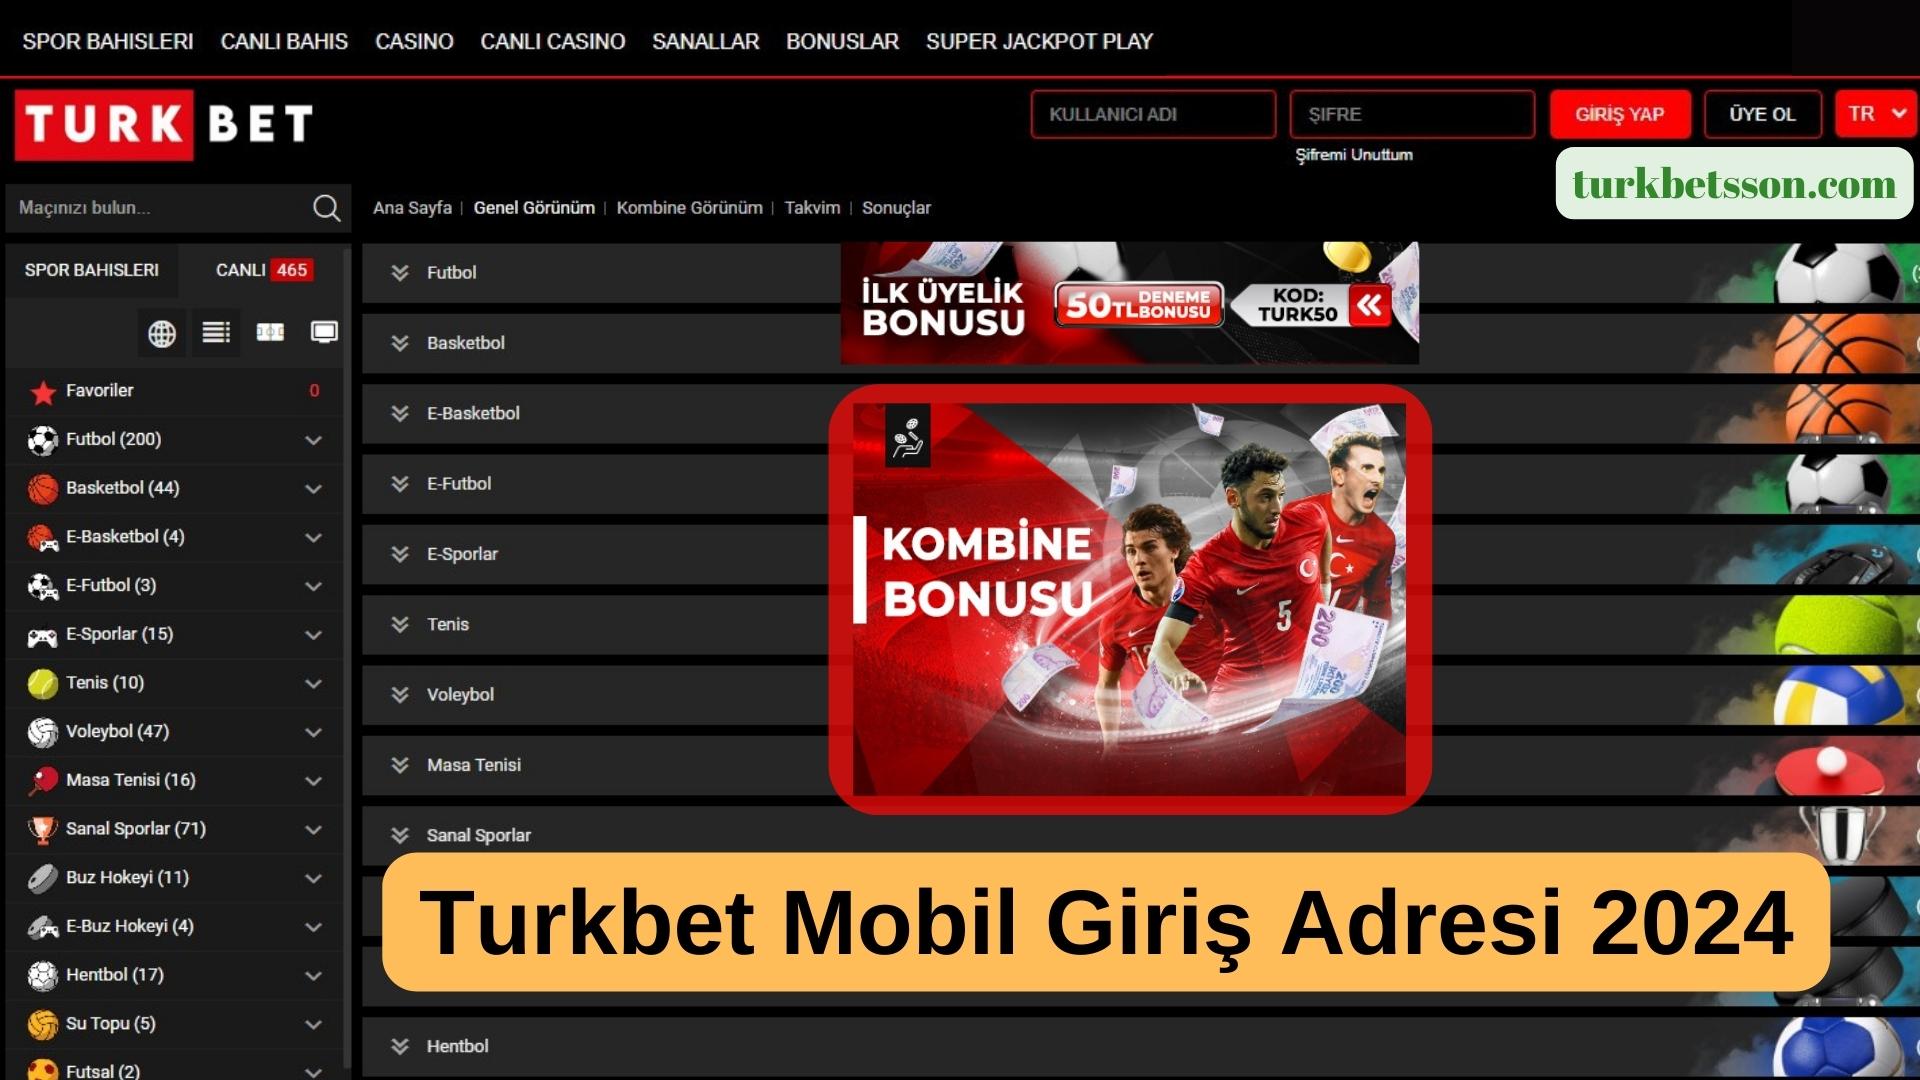 Turkbet Mobil Giriş Adresi 2024